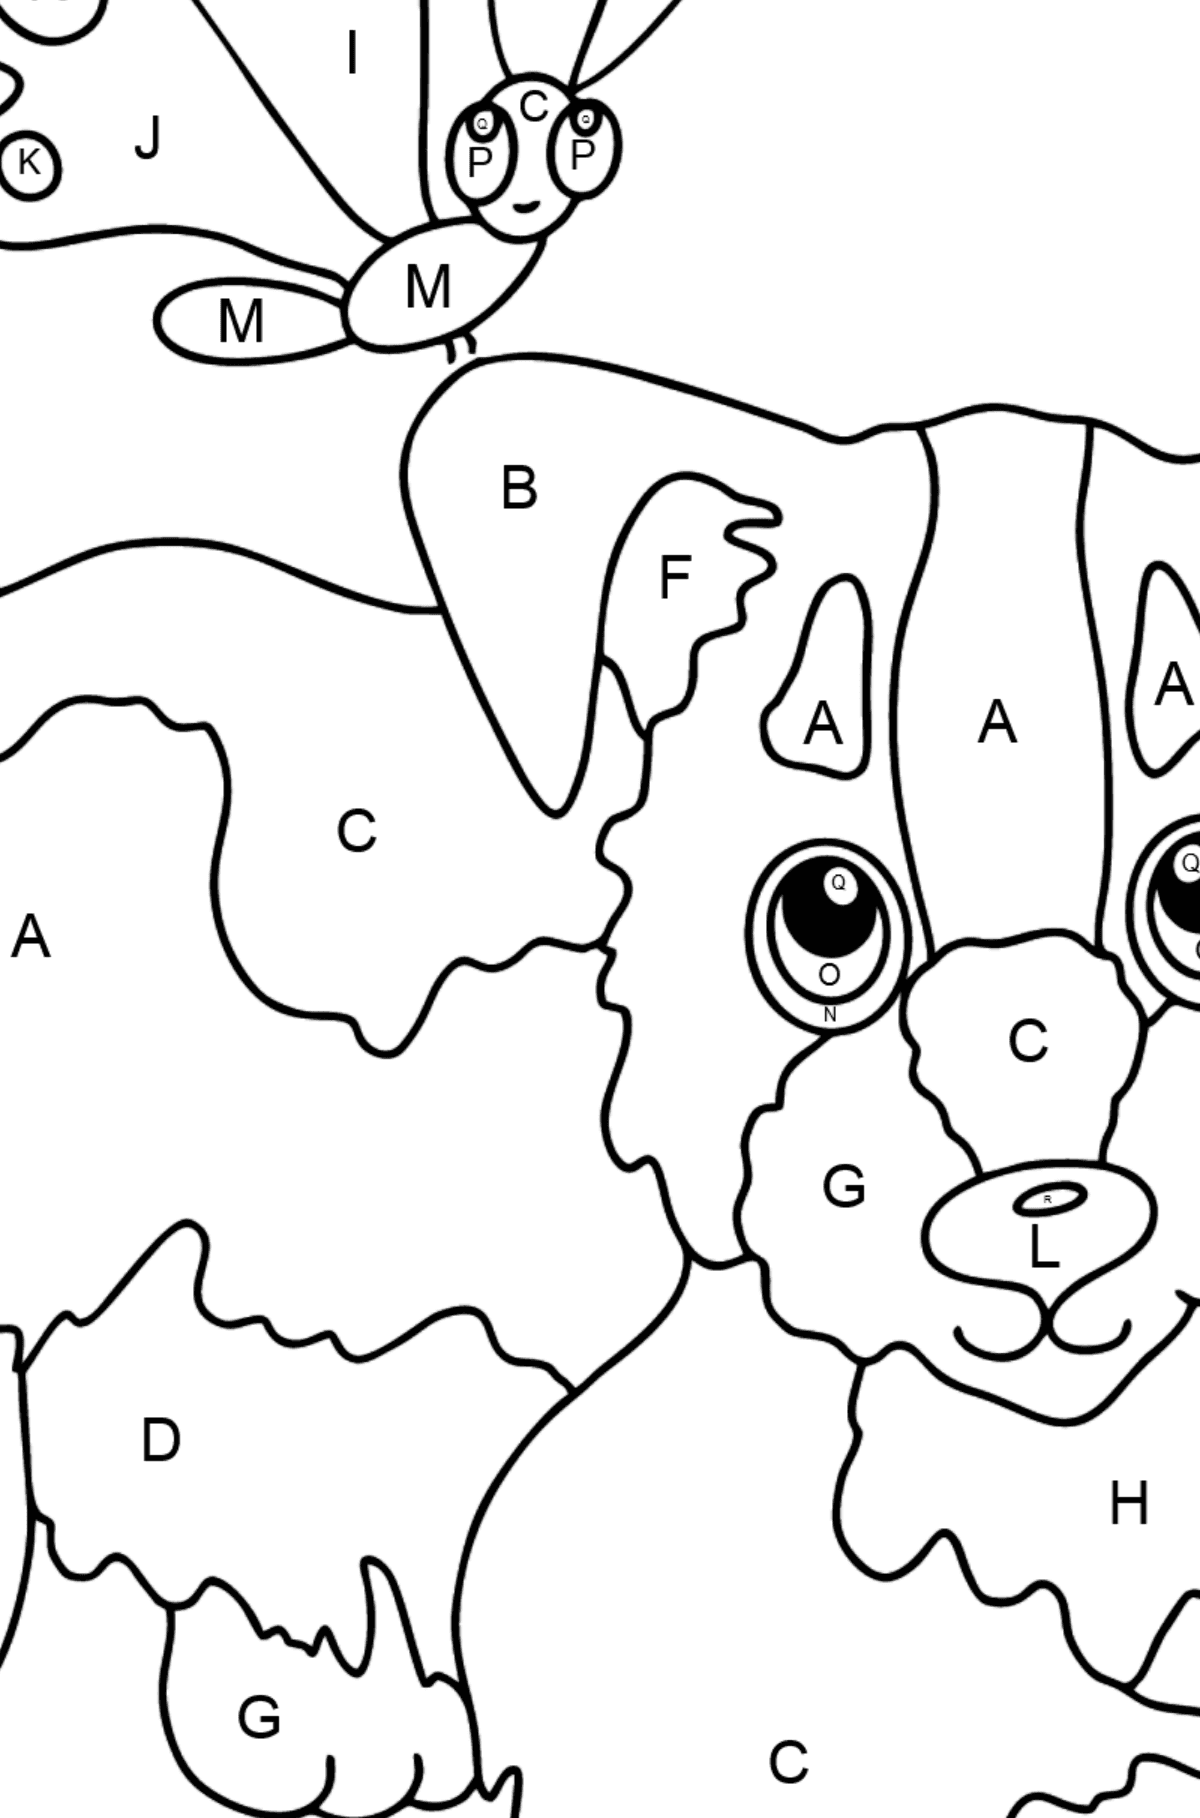 Desenho de cachorro e borboleta para colorir - Colorir por Letras para Crianças